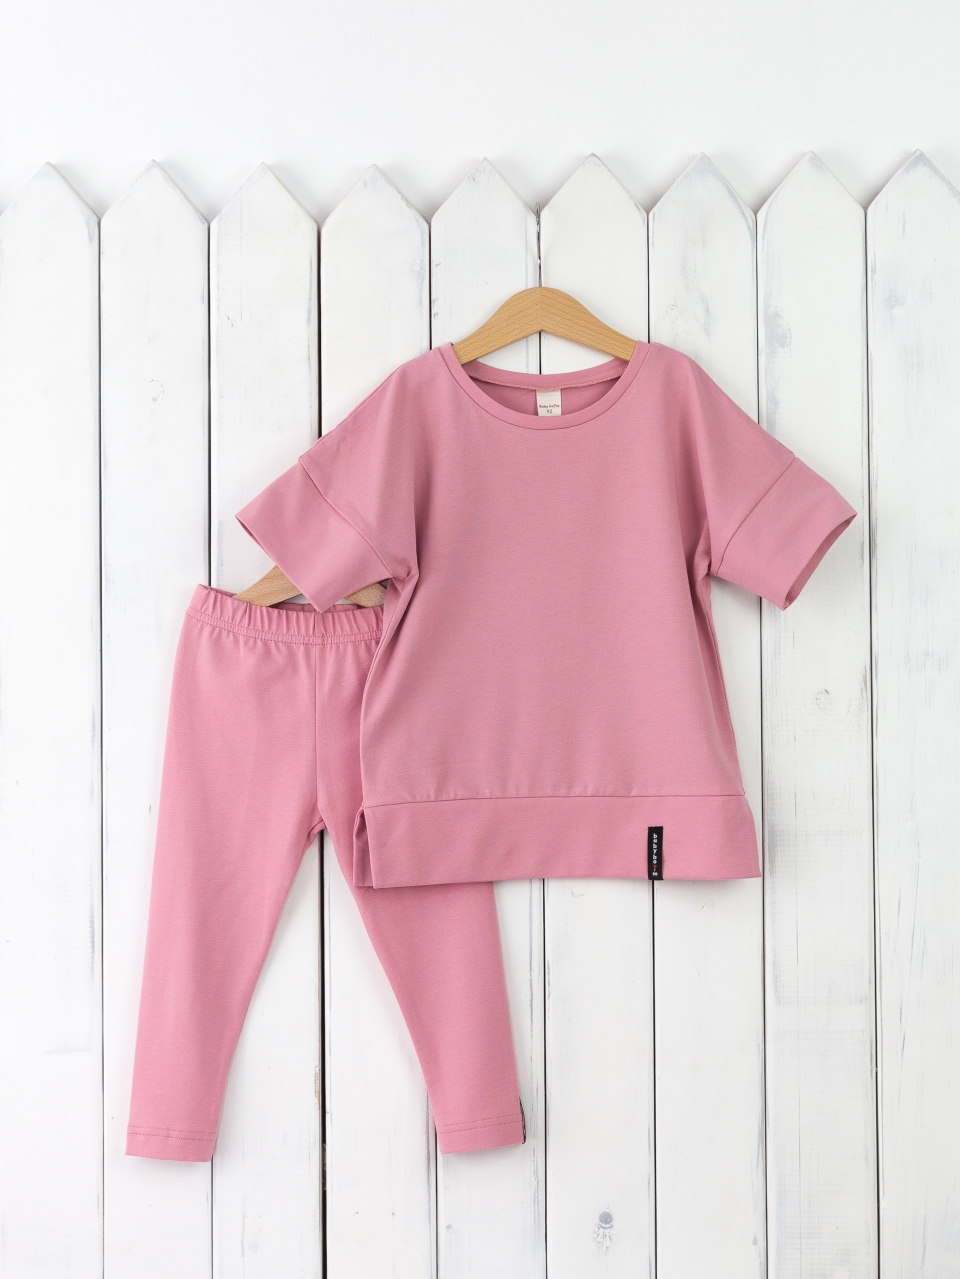 КД352/11-К Комплект для девочки р.110 футболка+легинсы/розовый зефир Бэби Бум